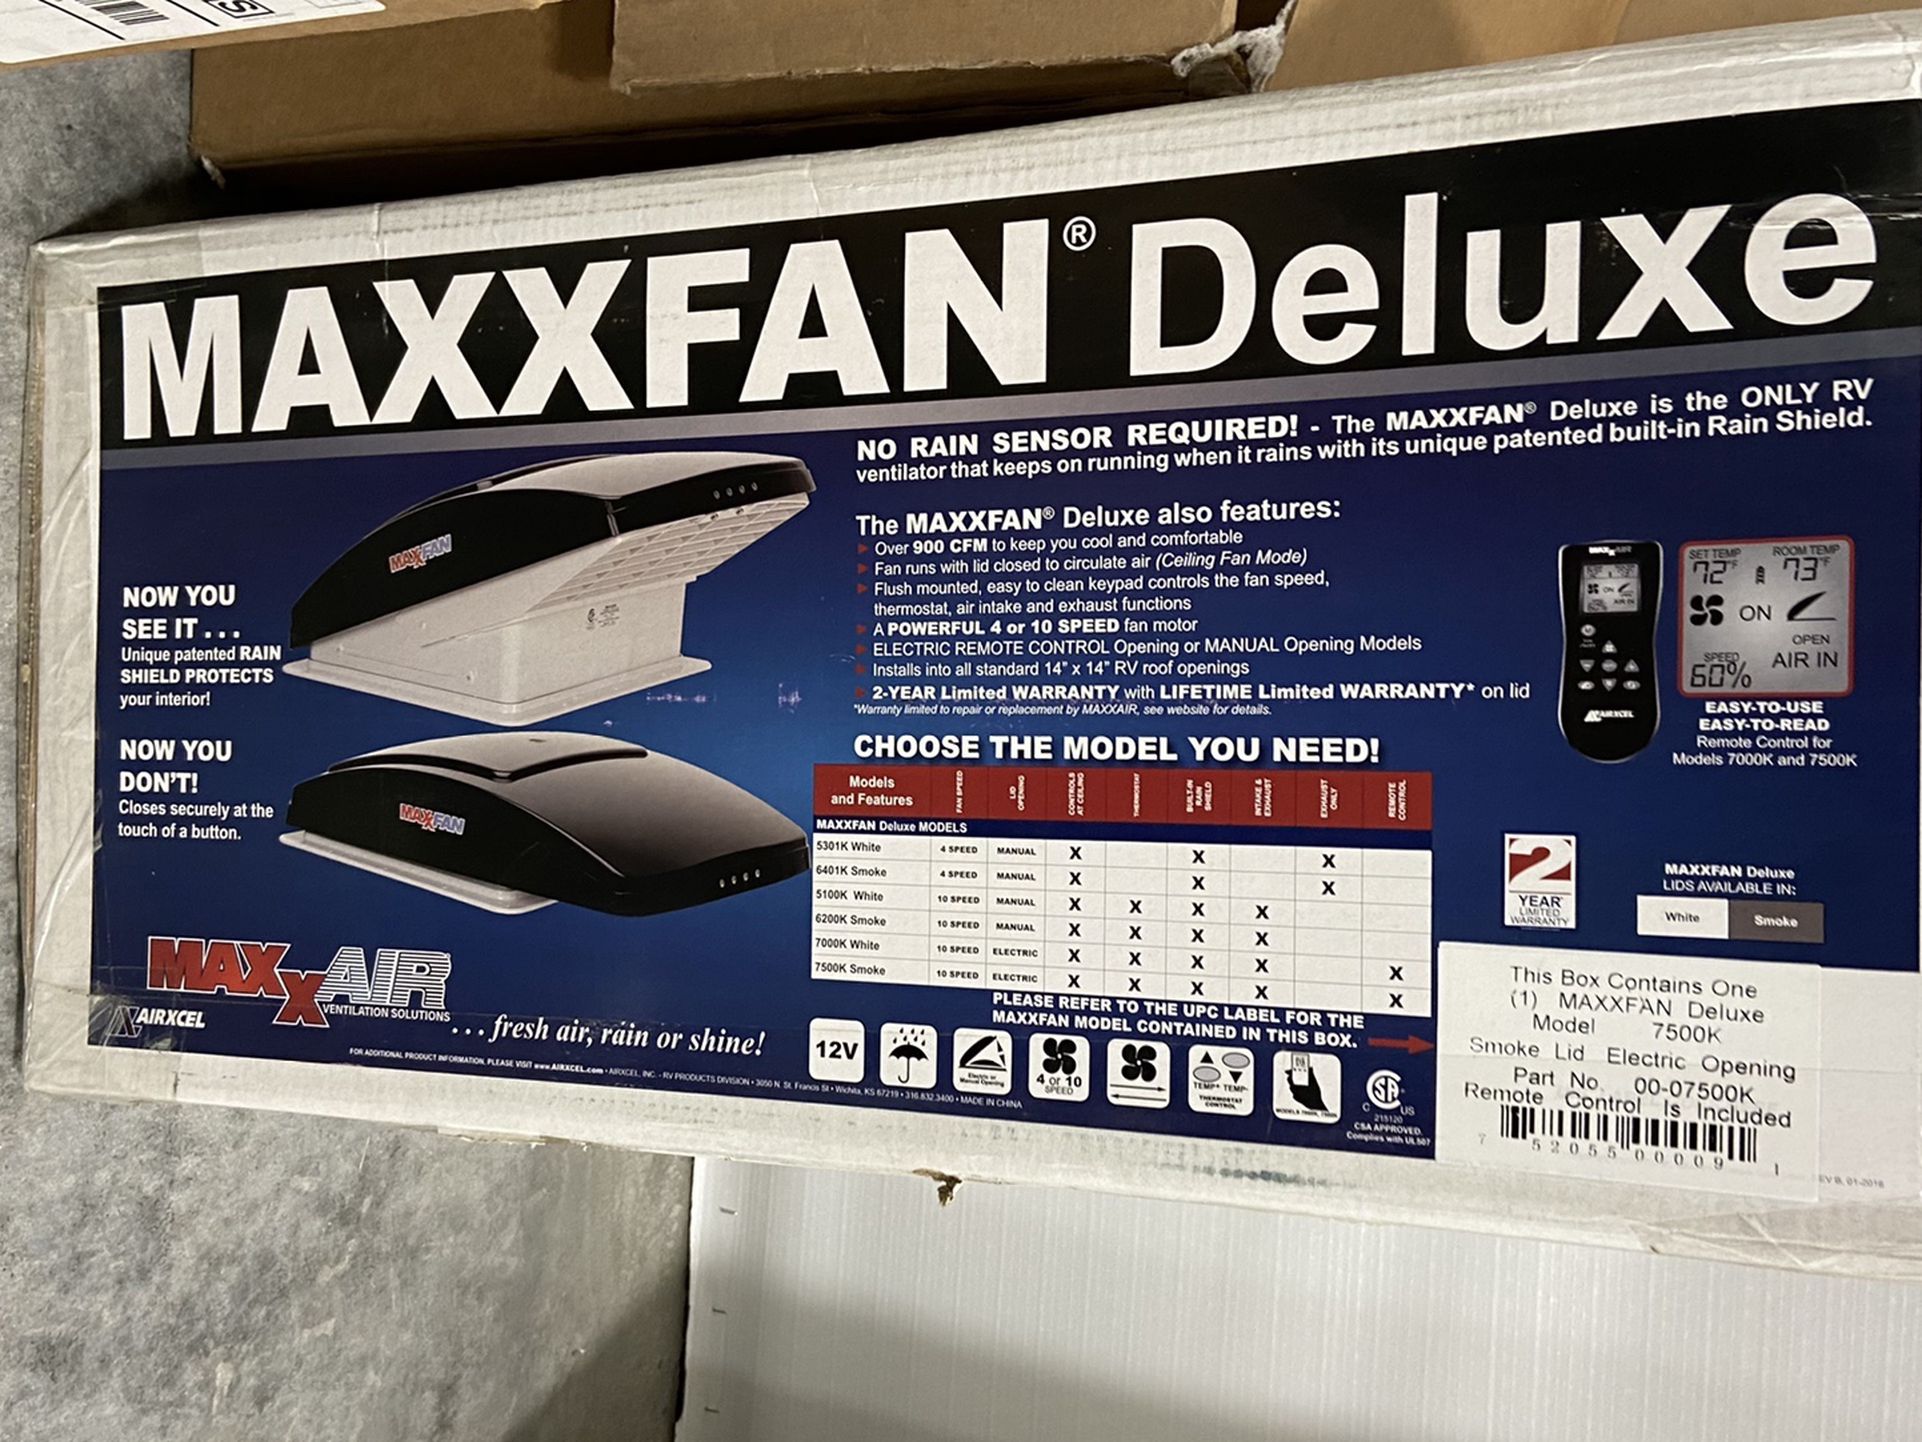 Maxxfan Deluxe 7500k